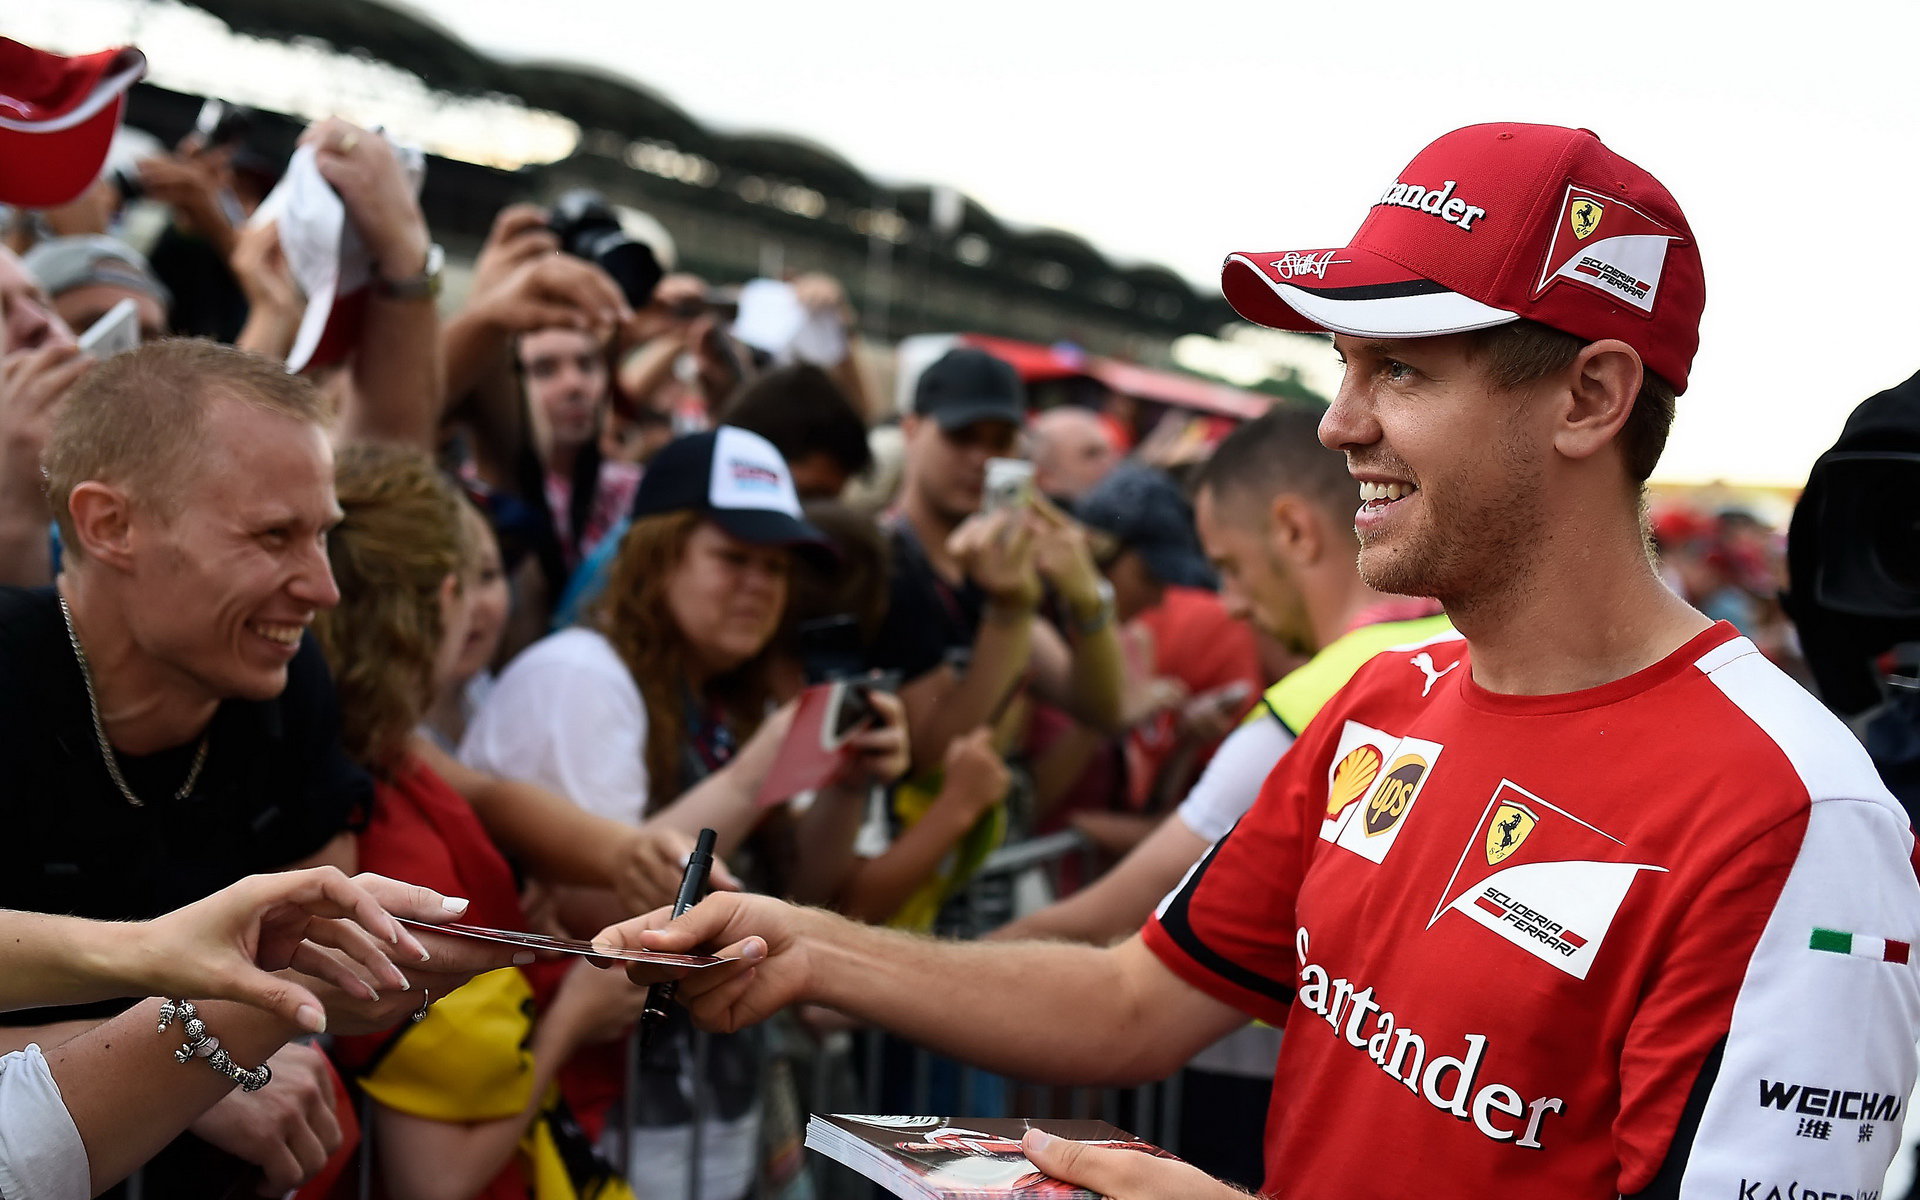 Angažmá Vettela označil Räikkönen za nejlepší věc, jakou v současnosti mohlo vedení Ferrari udělat.